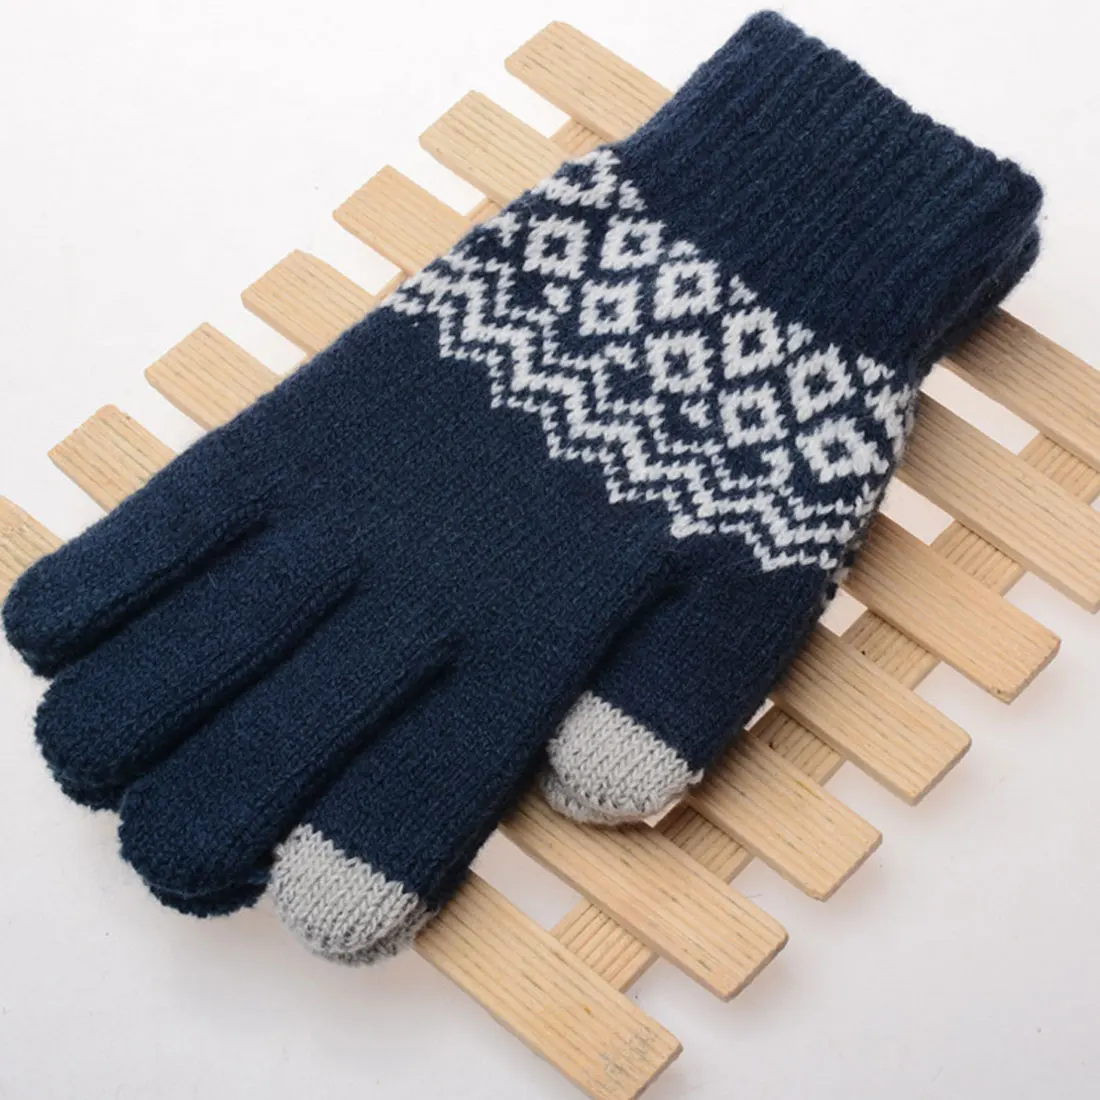 Топ продаж стрейч зимние вязаные перчатки для Для женщин Для мужчин квадратный варежки Применение смартфон Экран перчатки шерстяного трикотажа теплые Chirstmas подарок